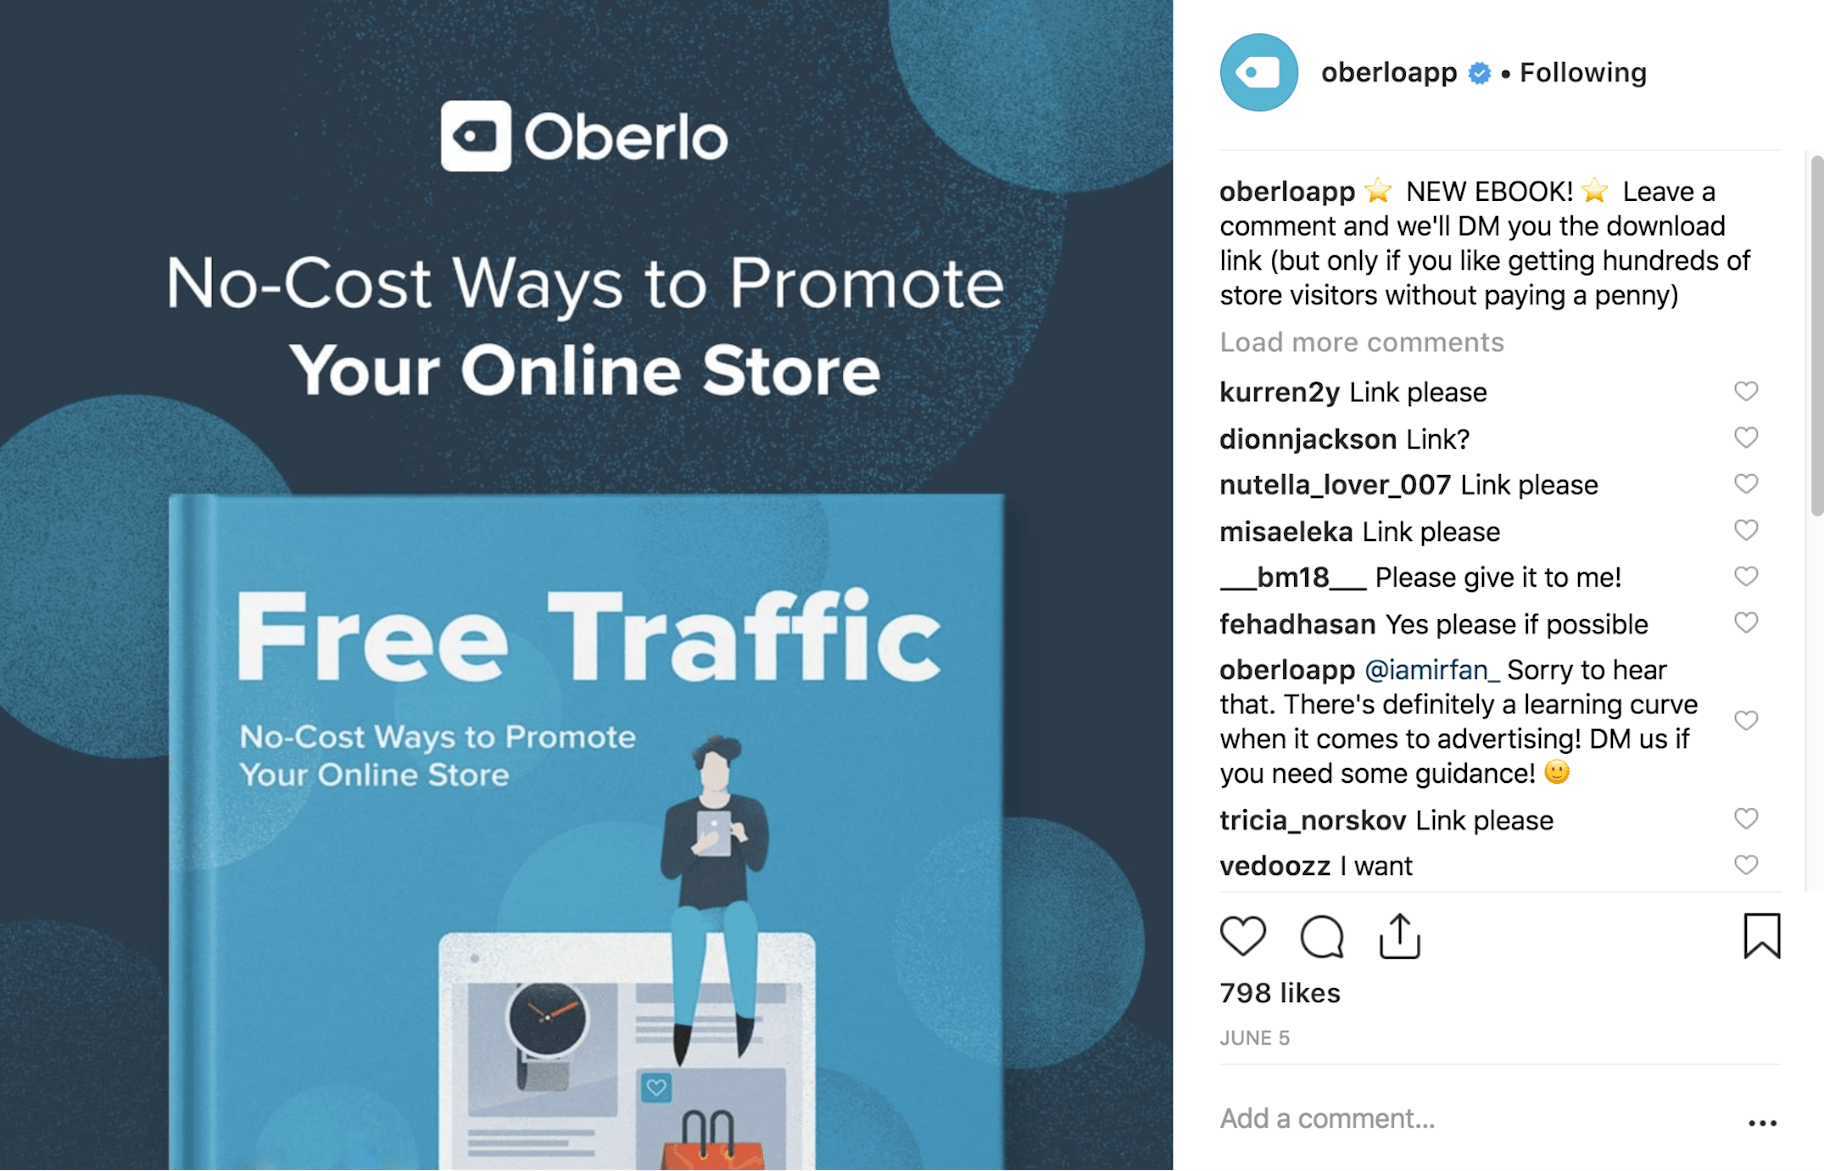 Oberlo Instagram Post